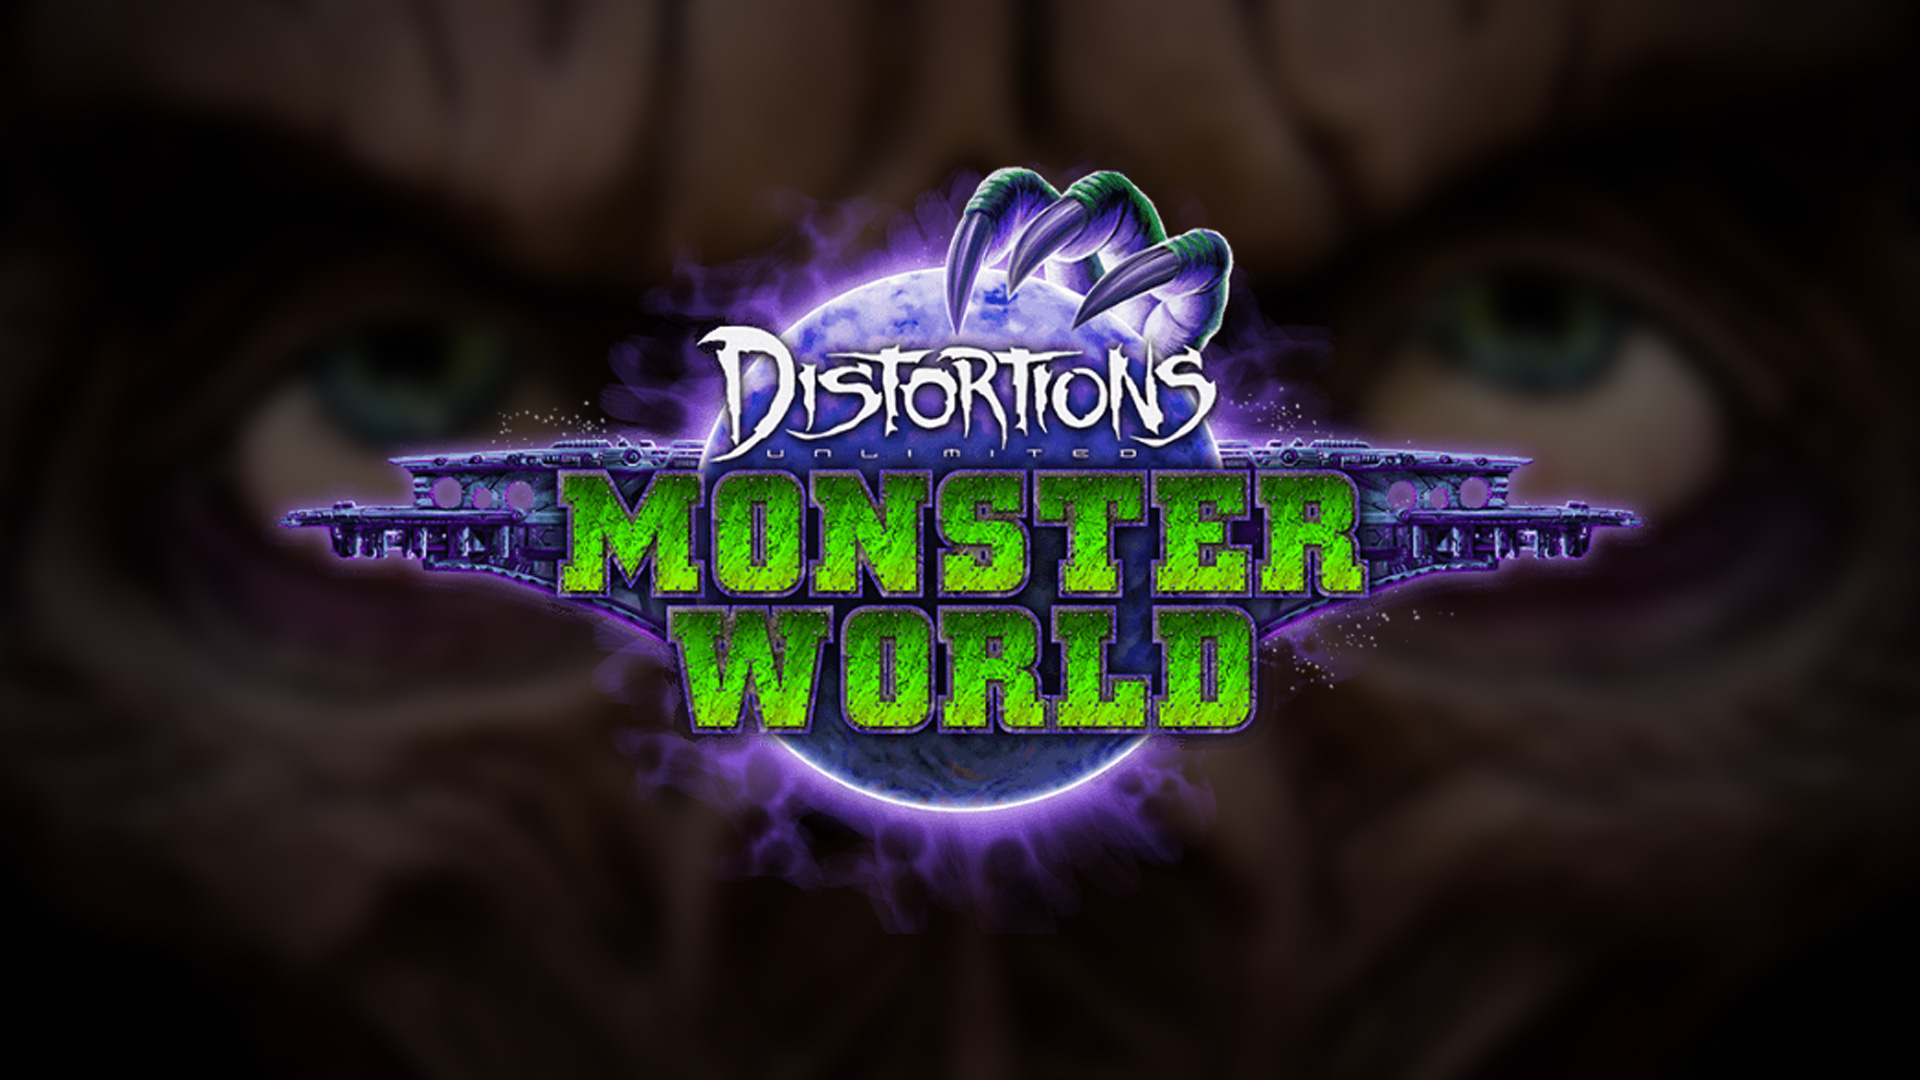 Monsterworld opens November 13